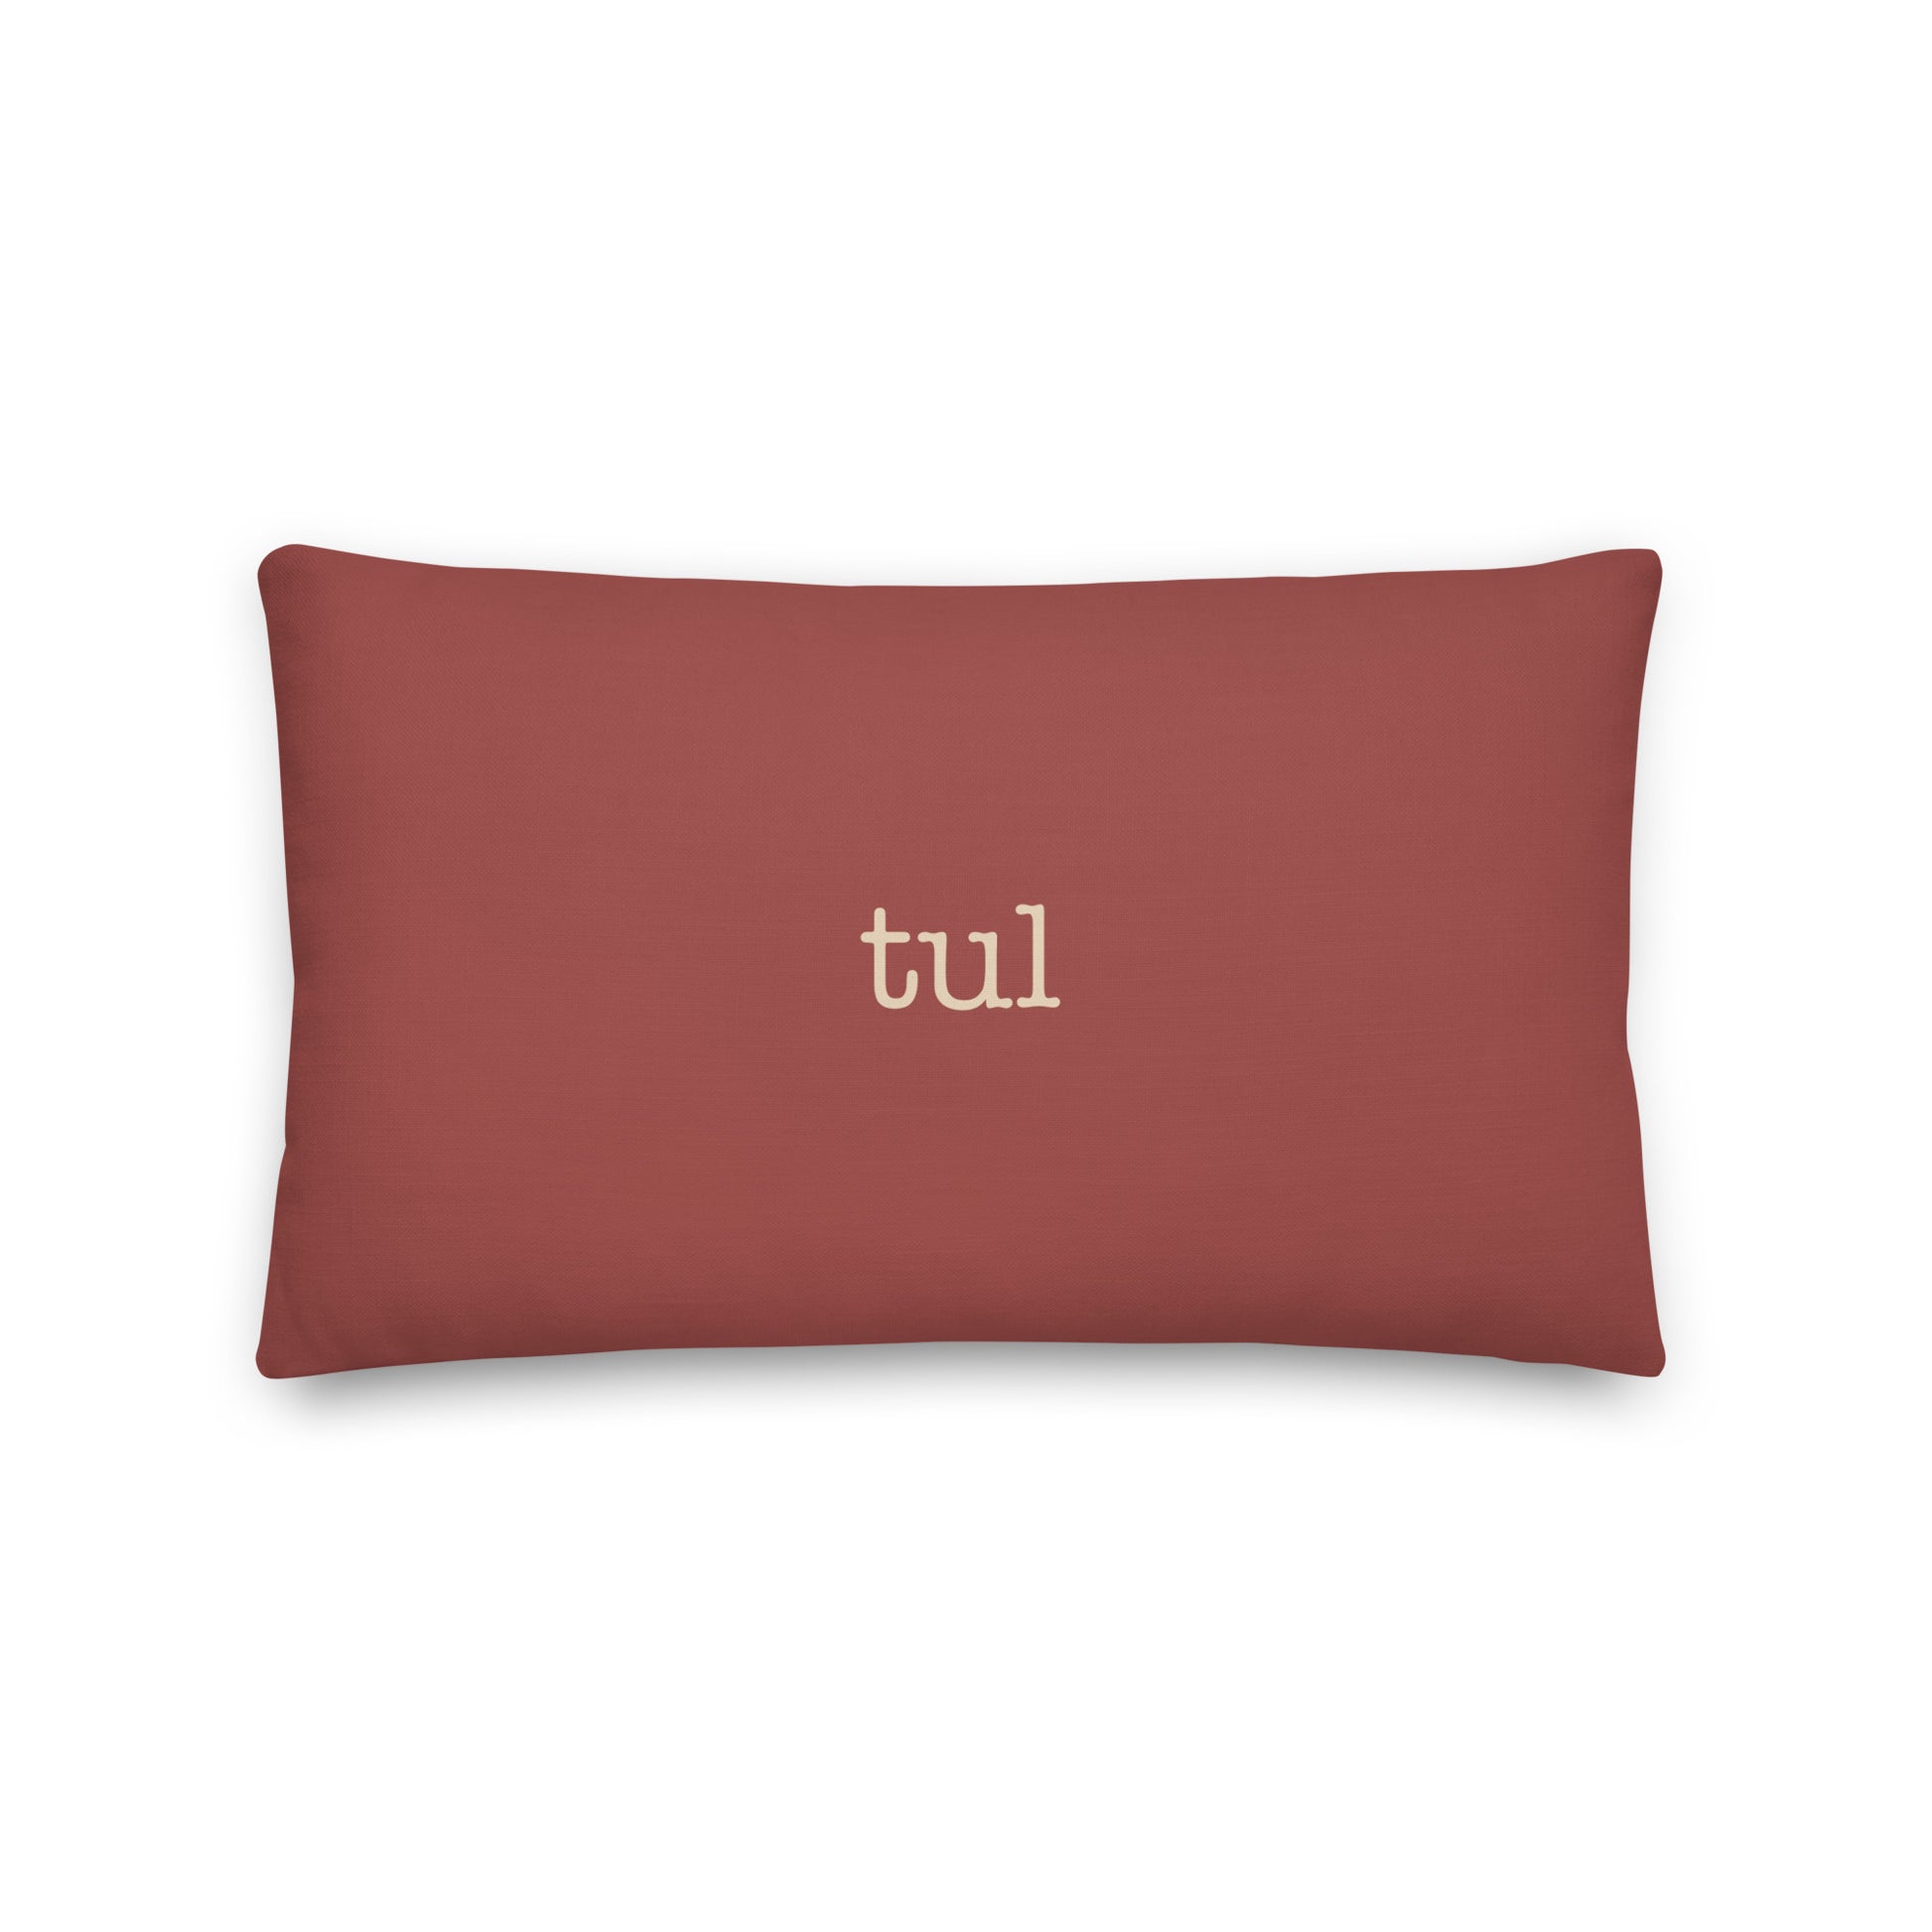 Typewriter Pillow - Terra Cotta • TUL Tulsa • YHM Designs - Image 02